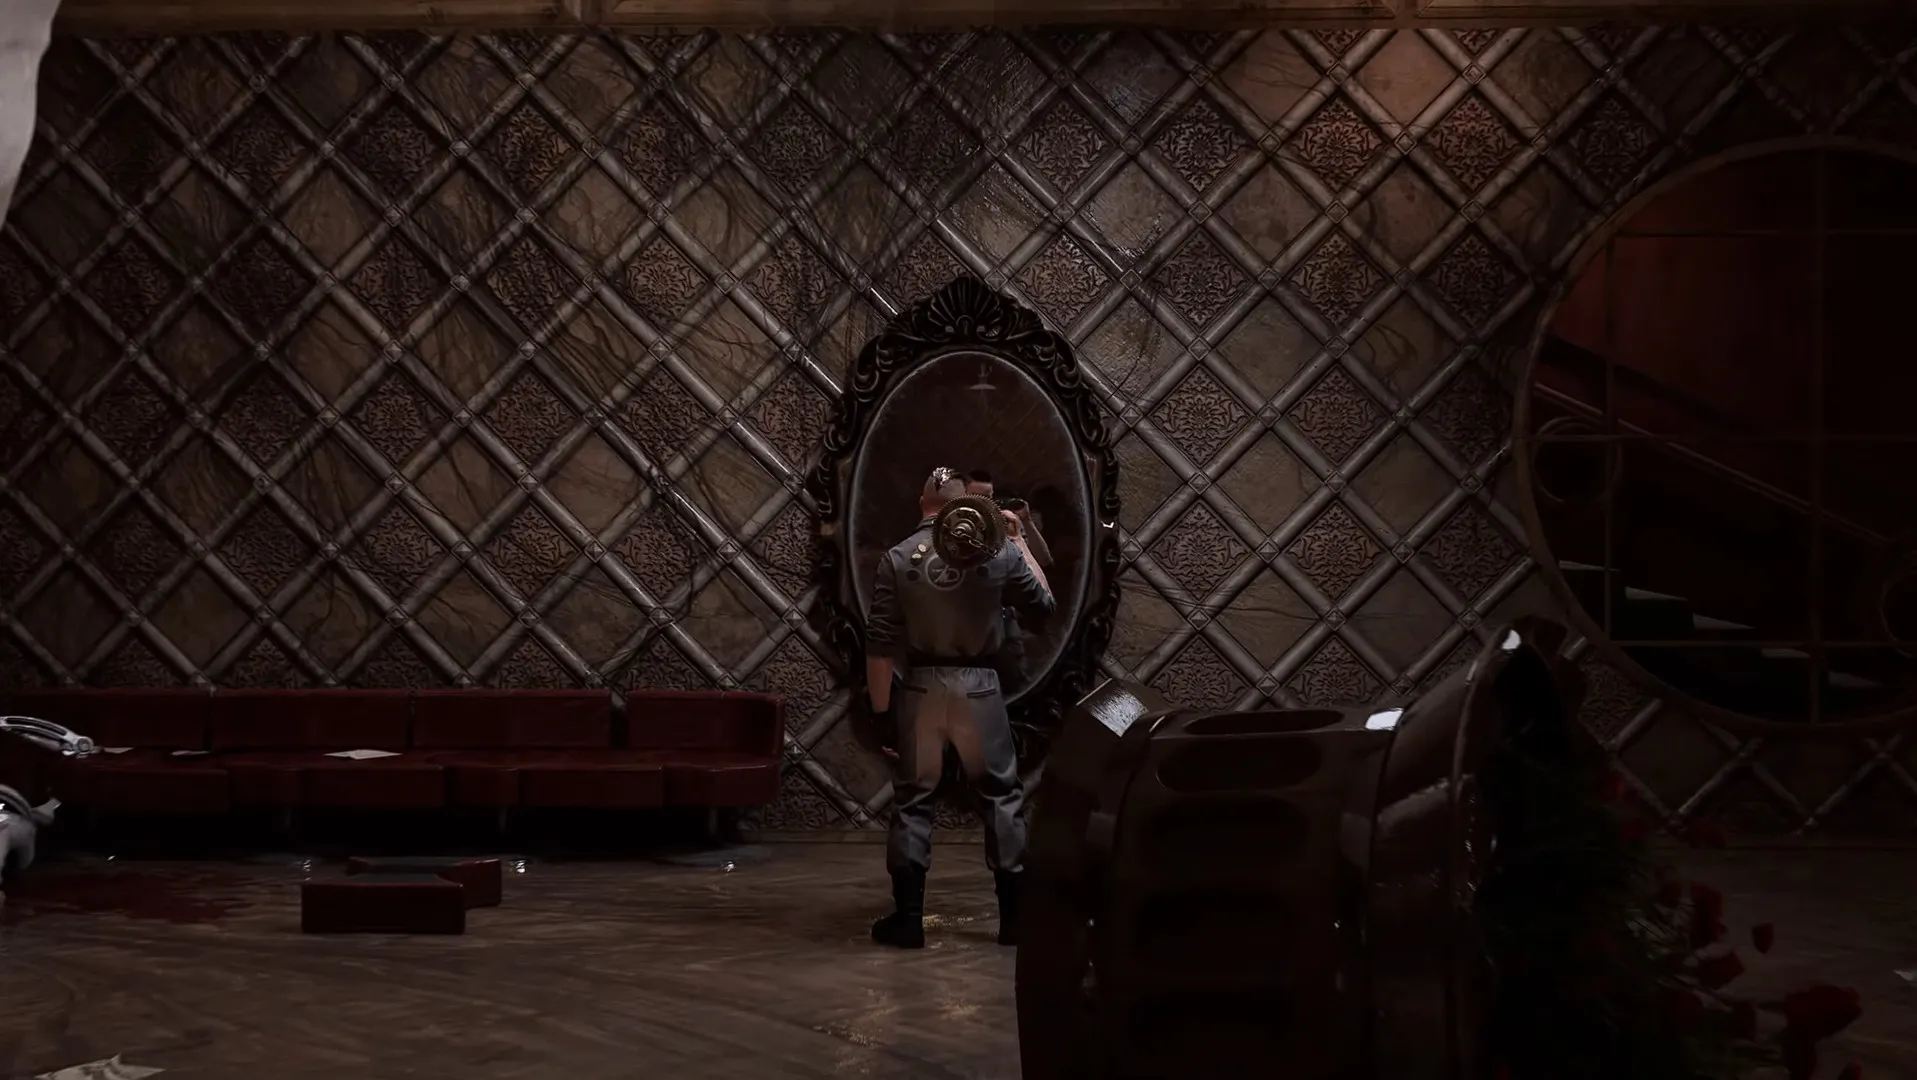 Inspirado em Bioshock, Atomic Heart lança trailer revelando seu